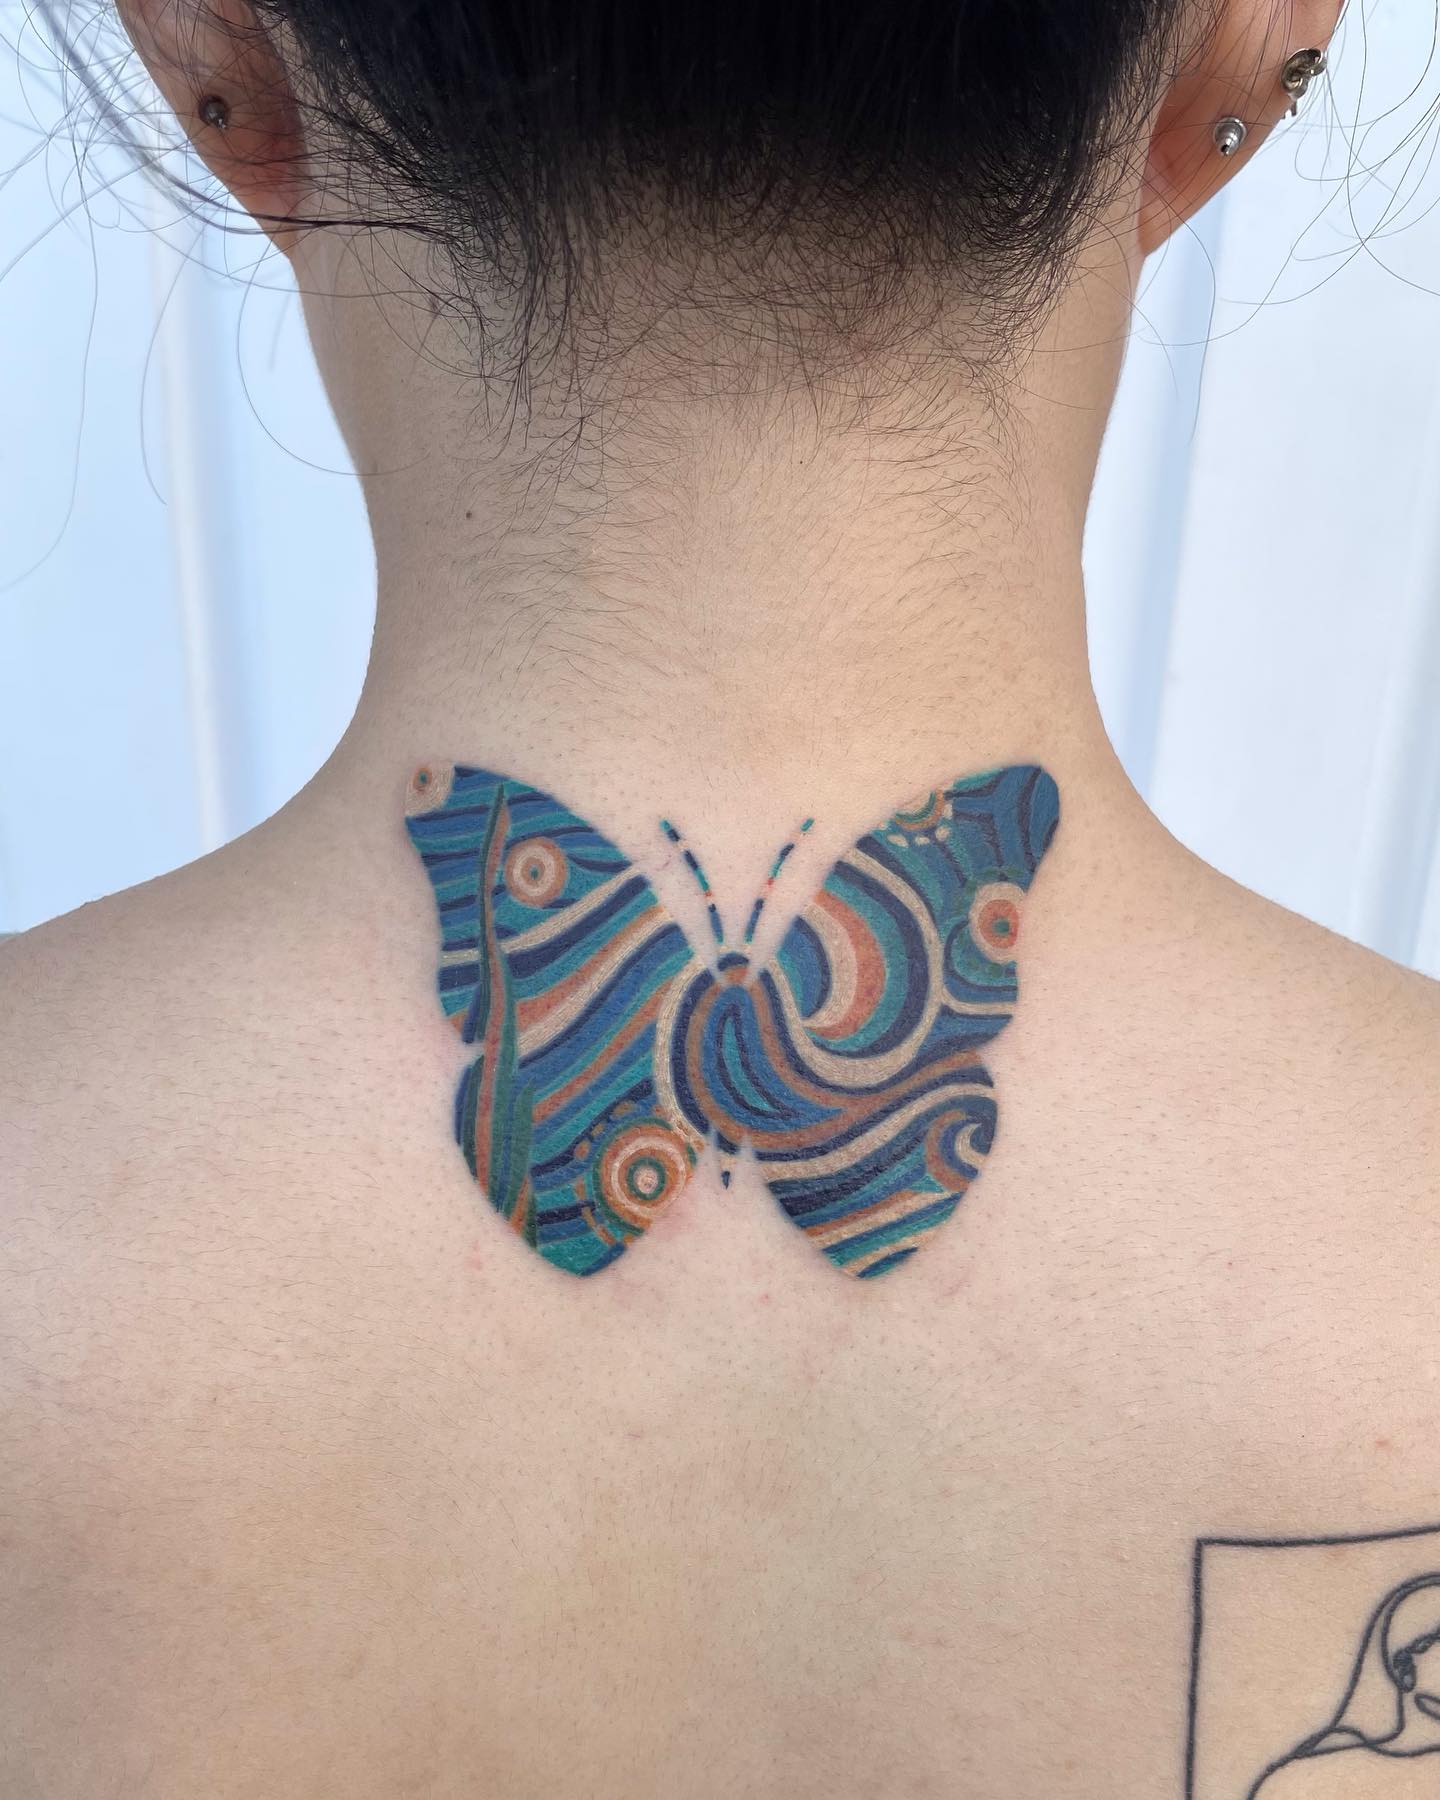 Diseño de mariposa tatuada en el cuello en azul.